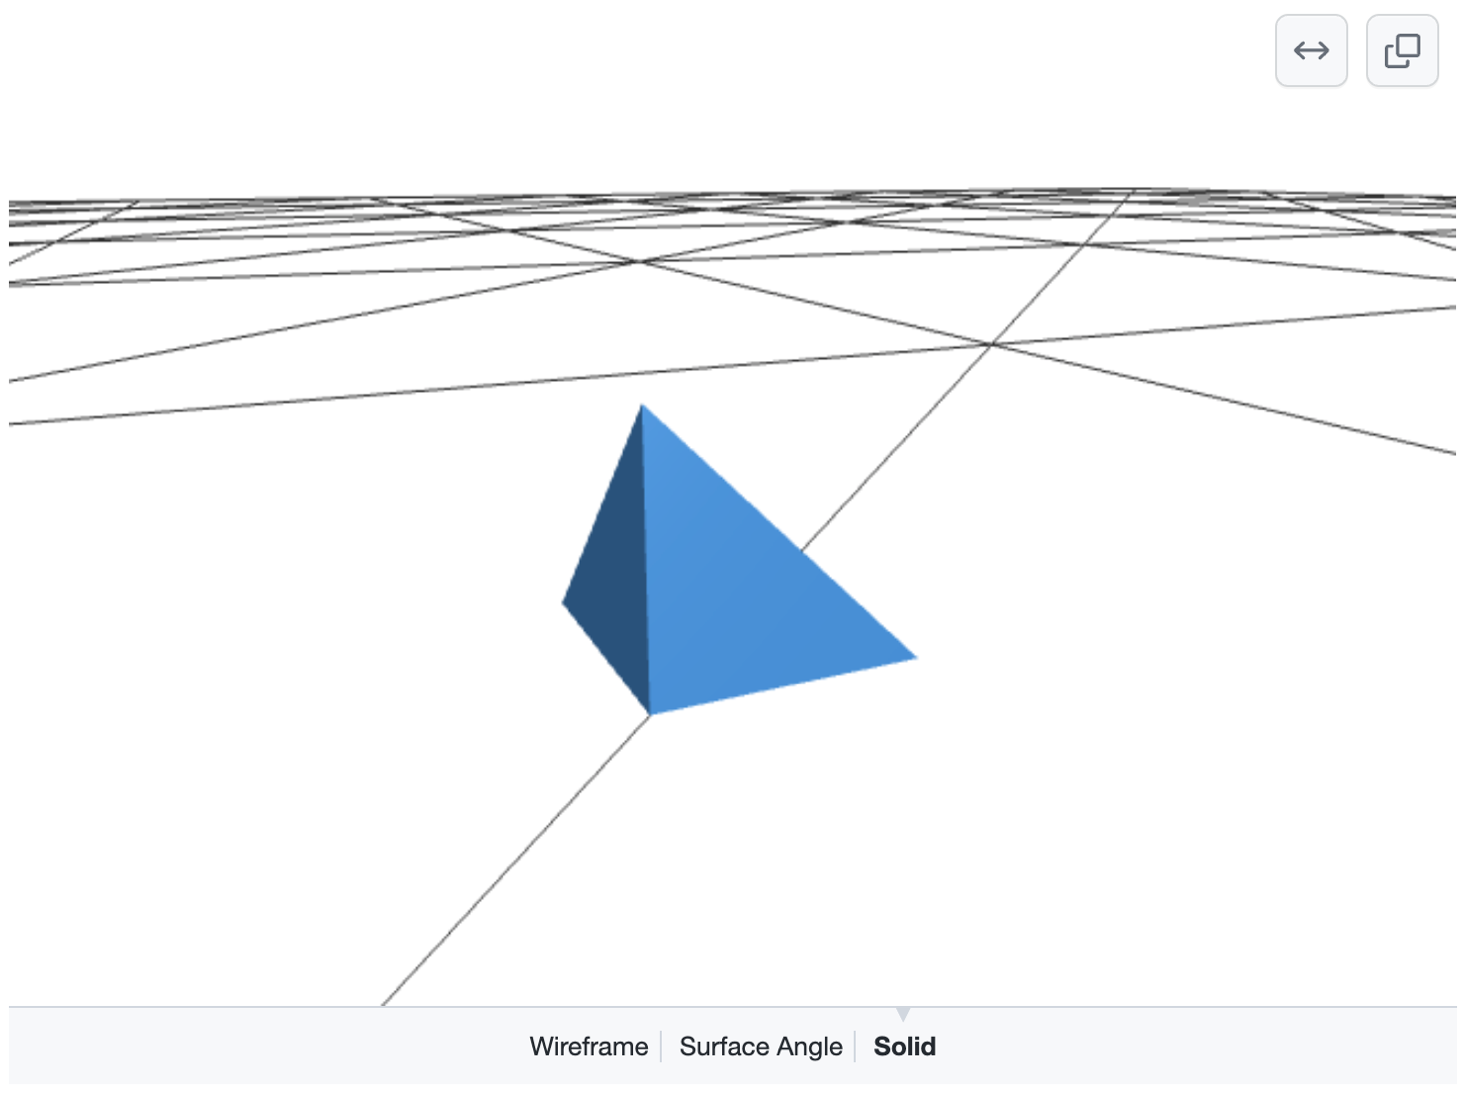 Screenshot eines gerenderten, bearbeitbaren 3D-Modells mit einer blauen Pyramide auf einem Raster aus schwarzen Linien auf weißem Grund. Unten werden Optionen zum Auswählen von „Wireframe“, „Surface Angle“ oder „Solid“ angezeigt.